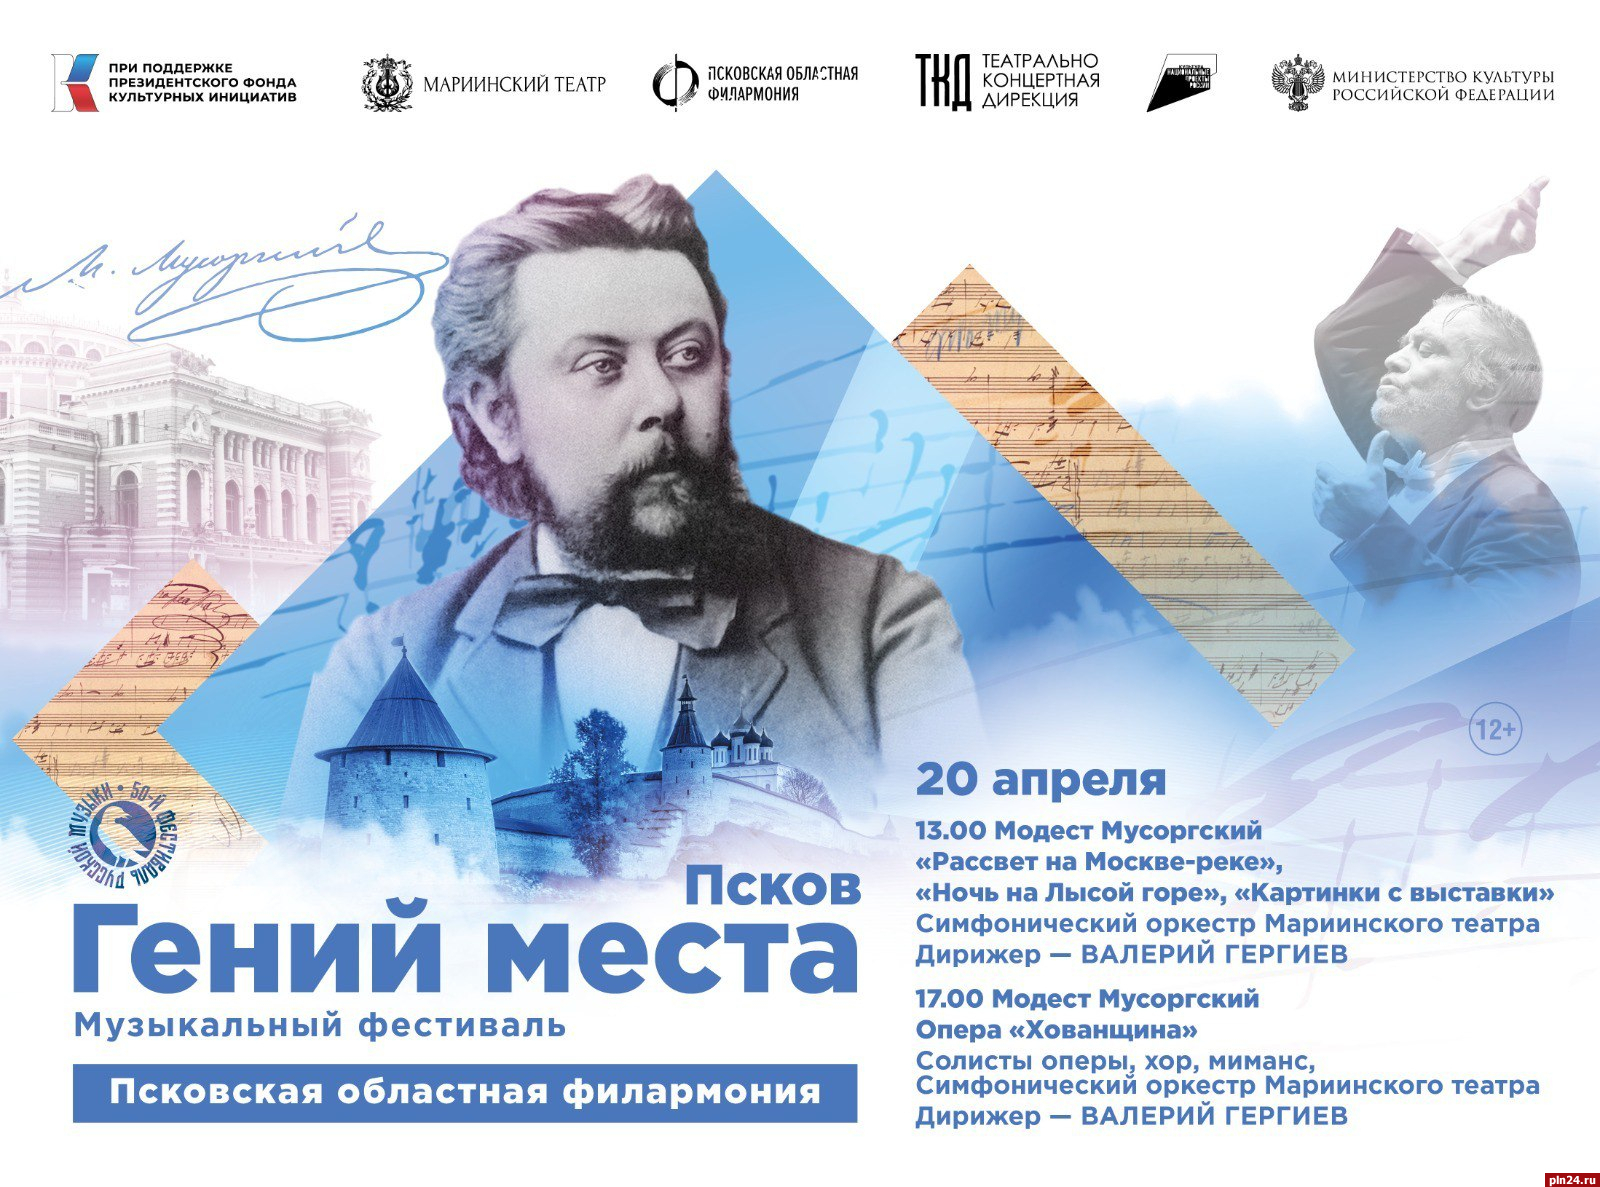 Оперу «Хованщина» дадут артисты из Петербурга в псковской филармонии